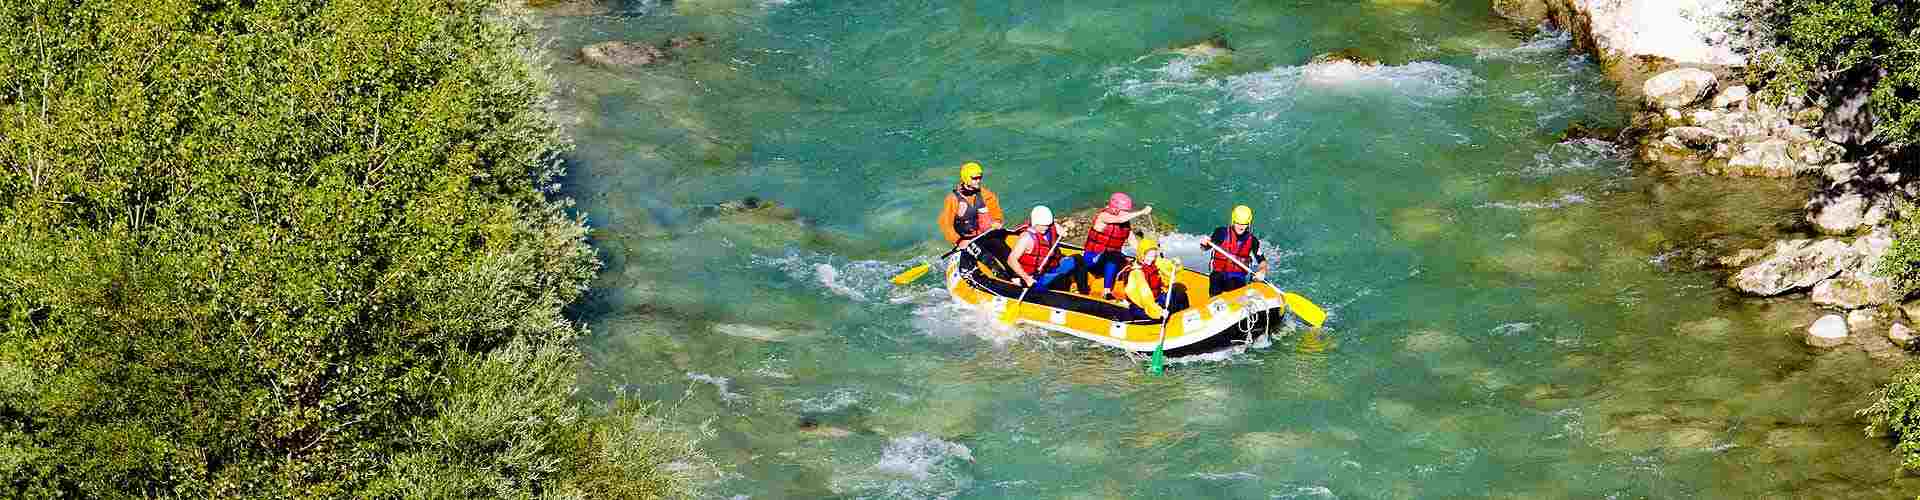 Rafting en Tudela de Duero